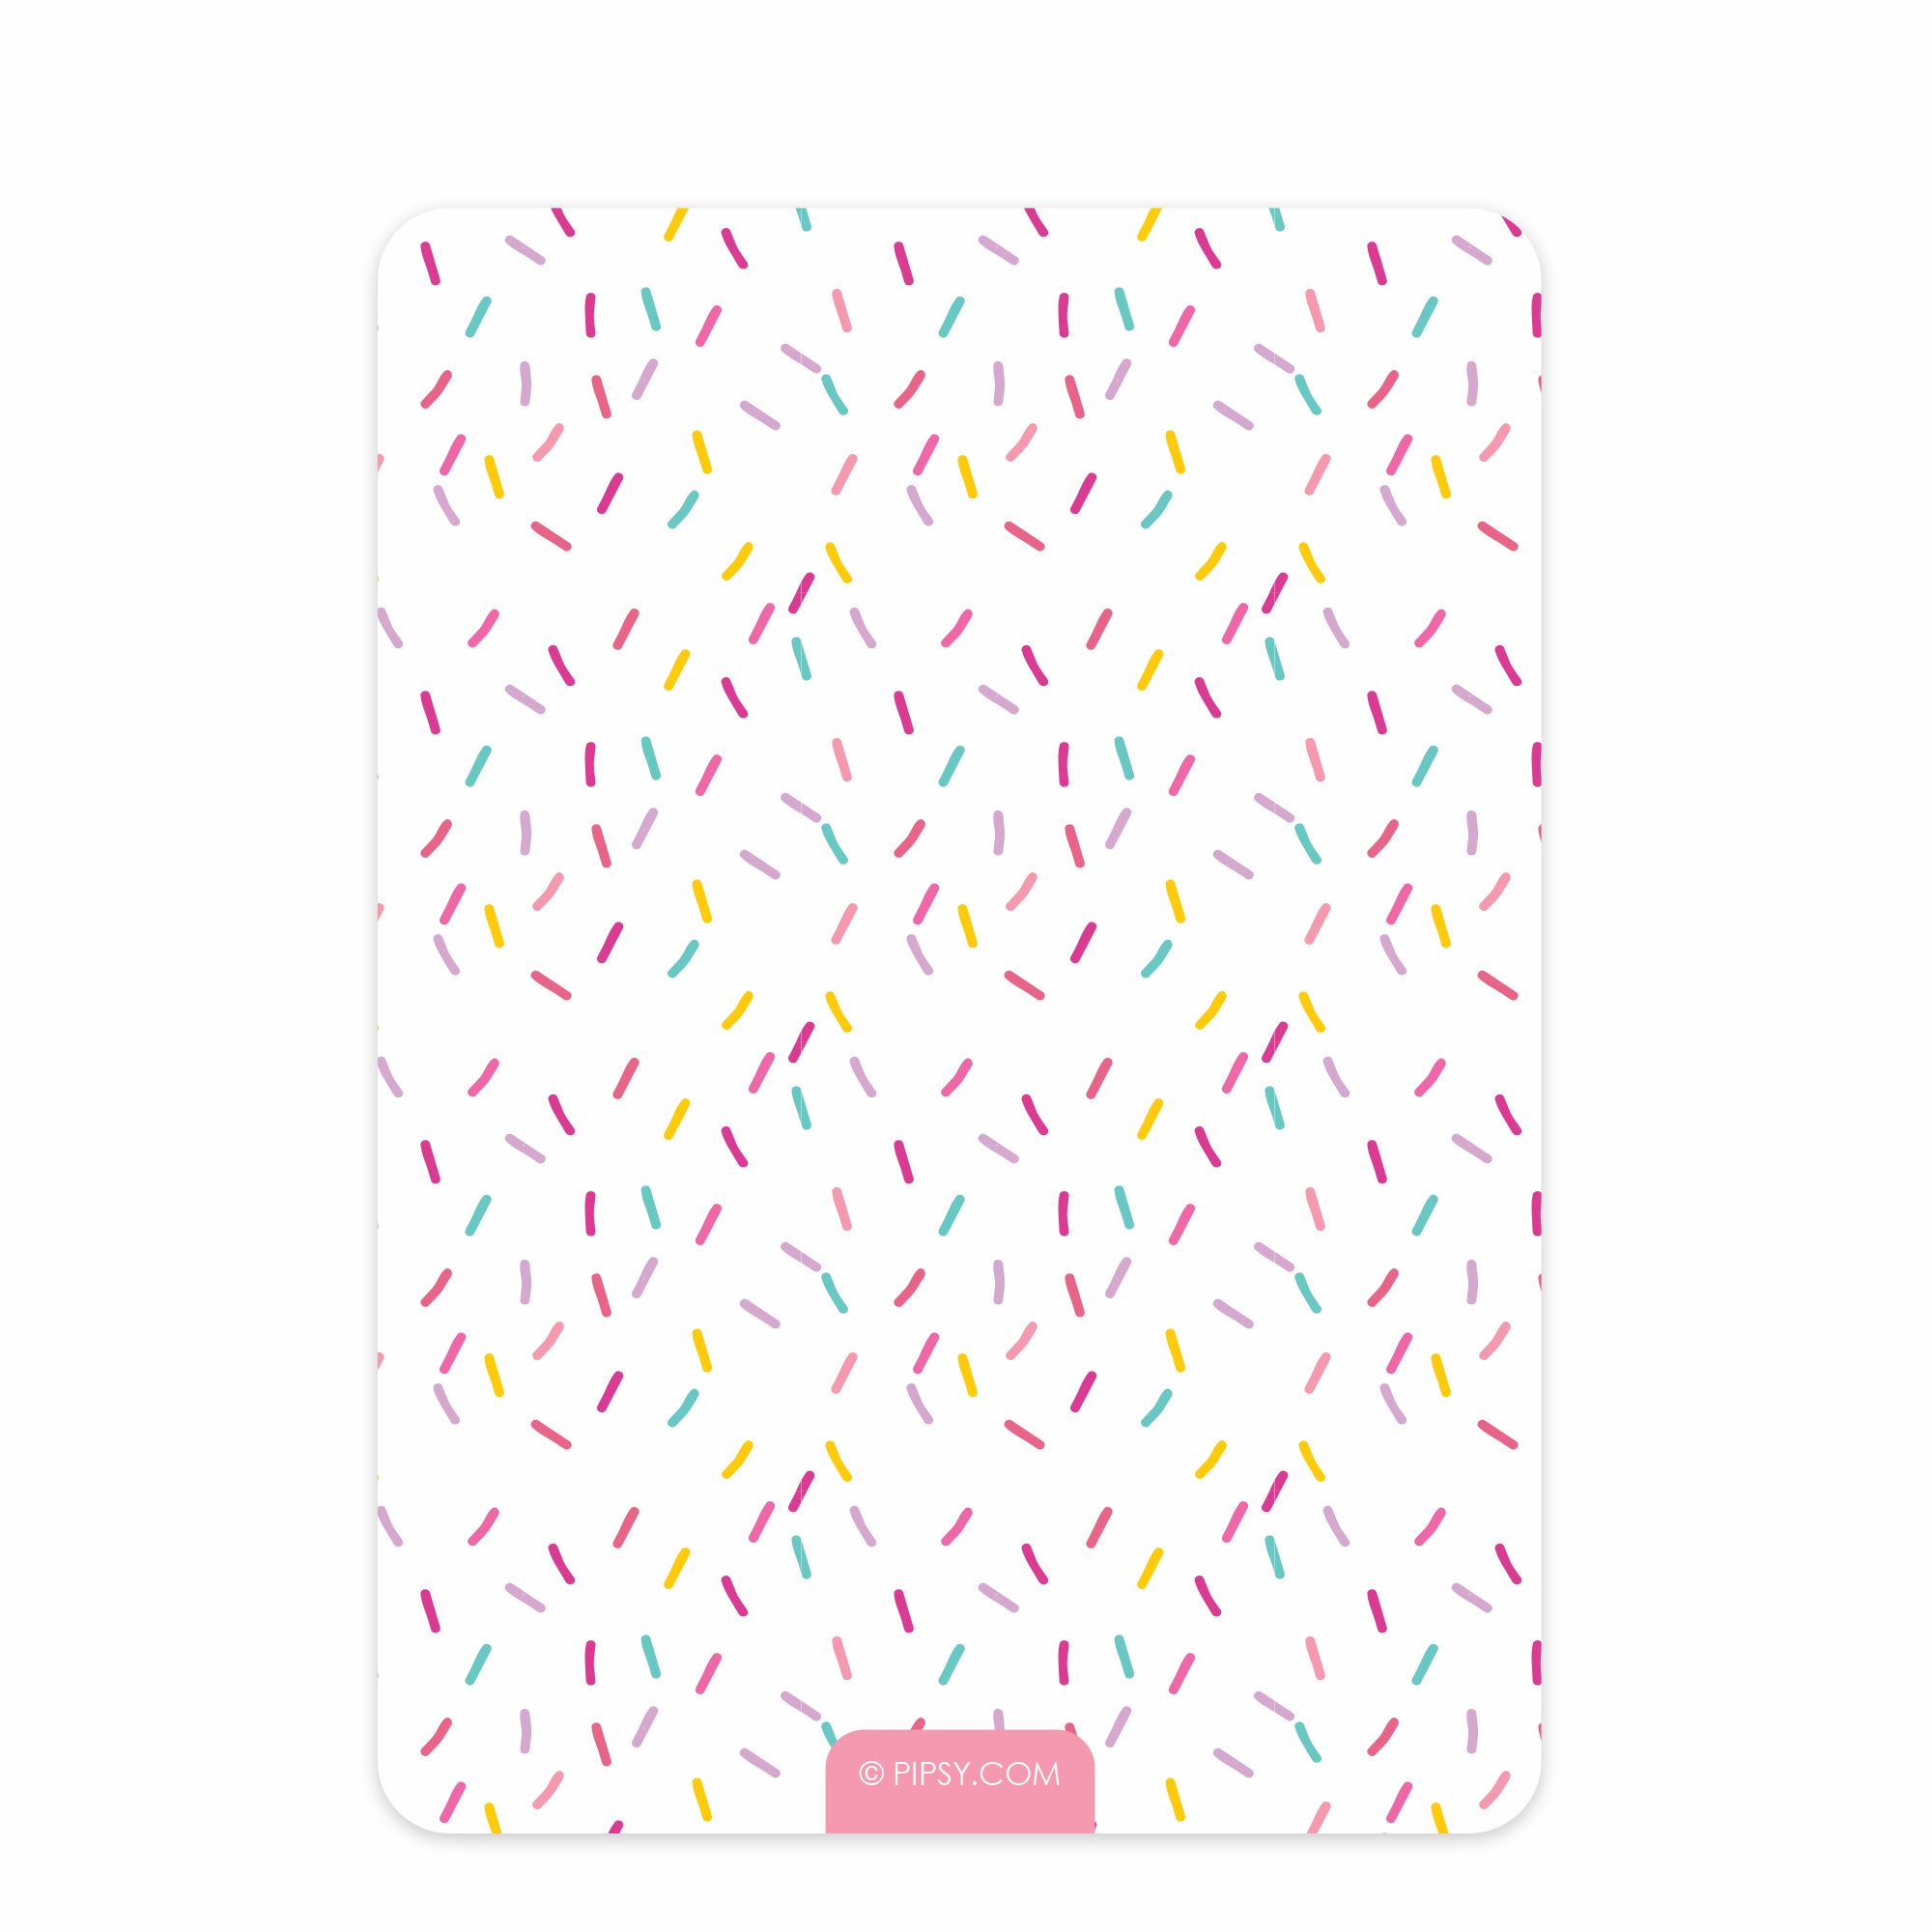 Donut Birthday Invitation, Printed on Cardstock, Pink Sprinkles, PIPSY.COM, back